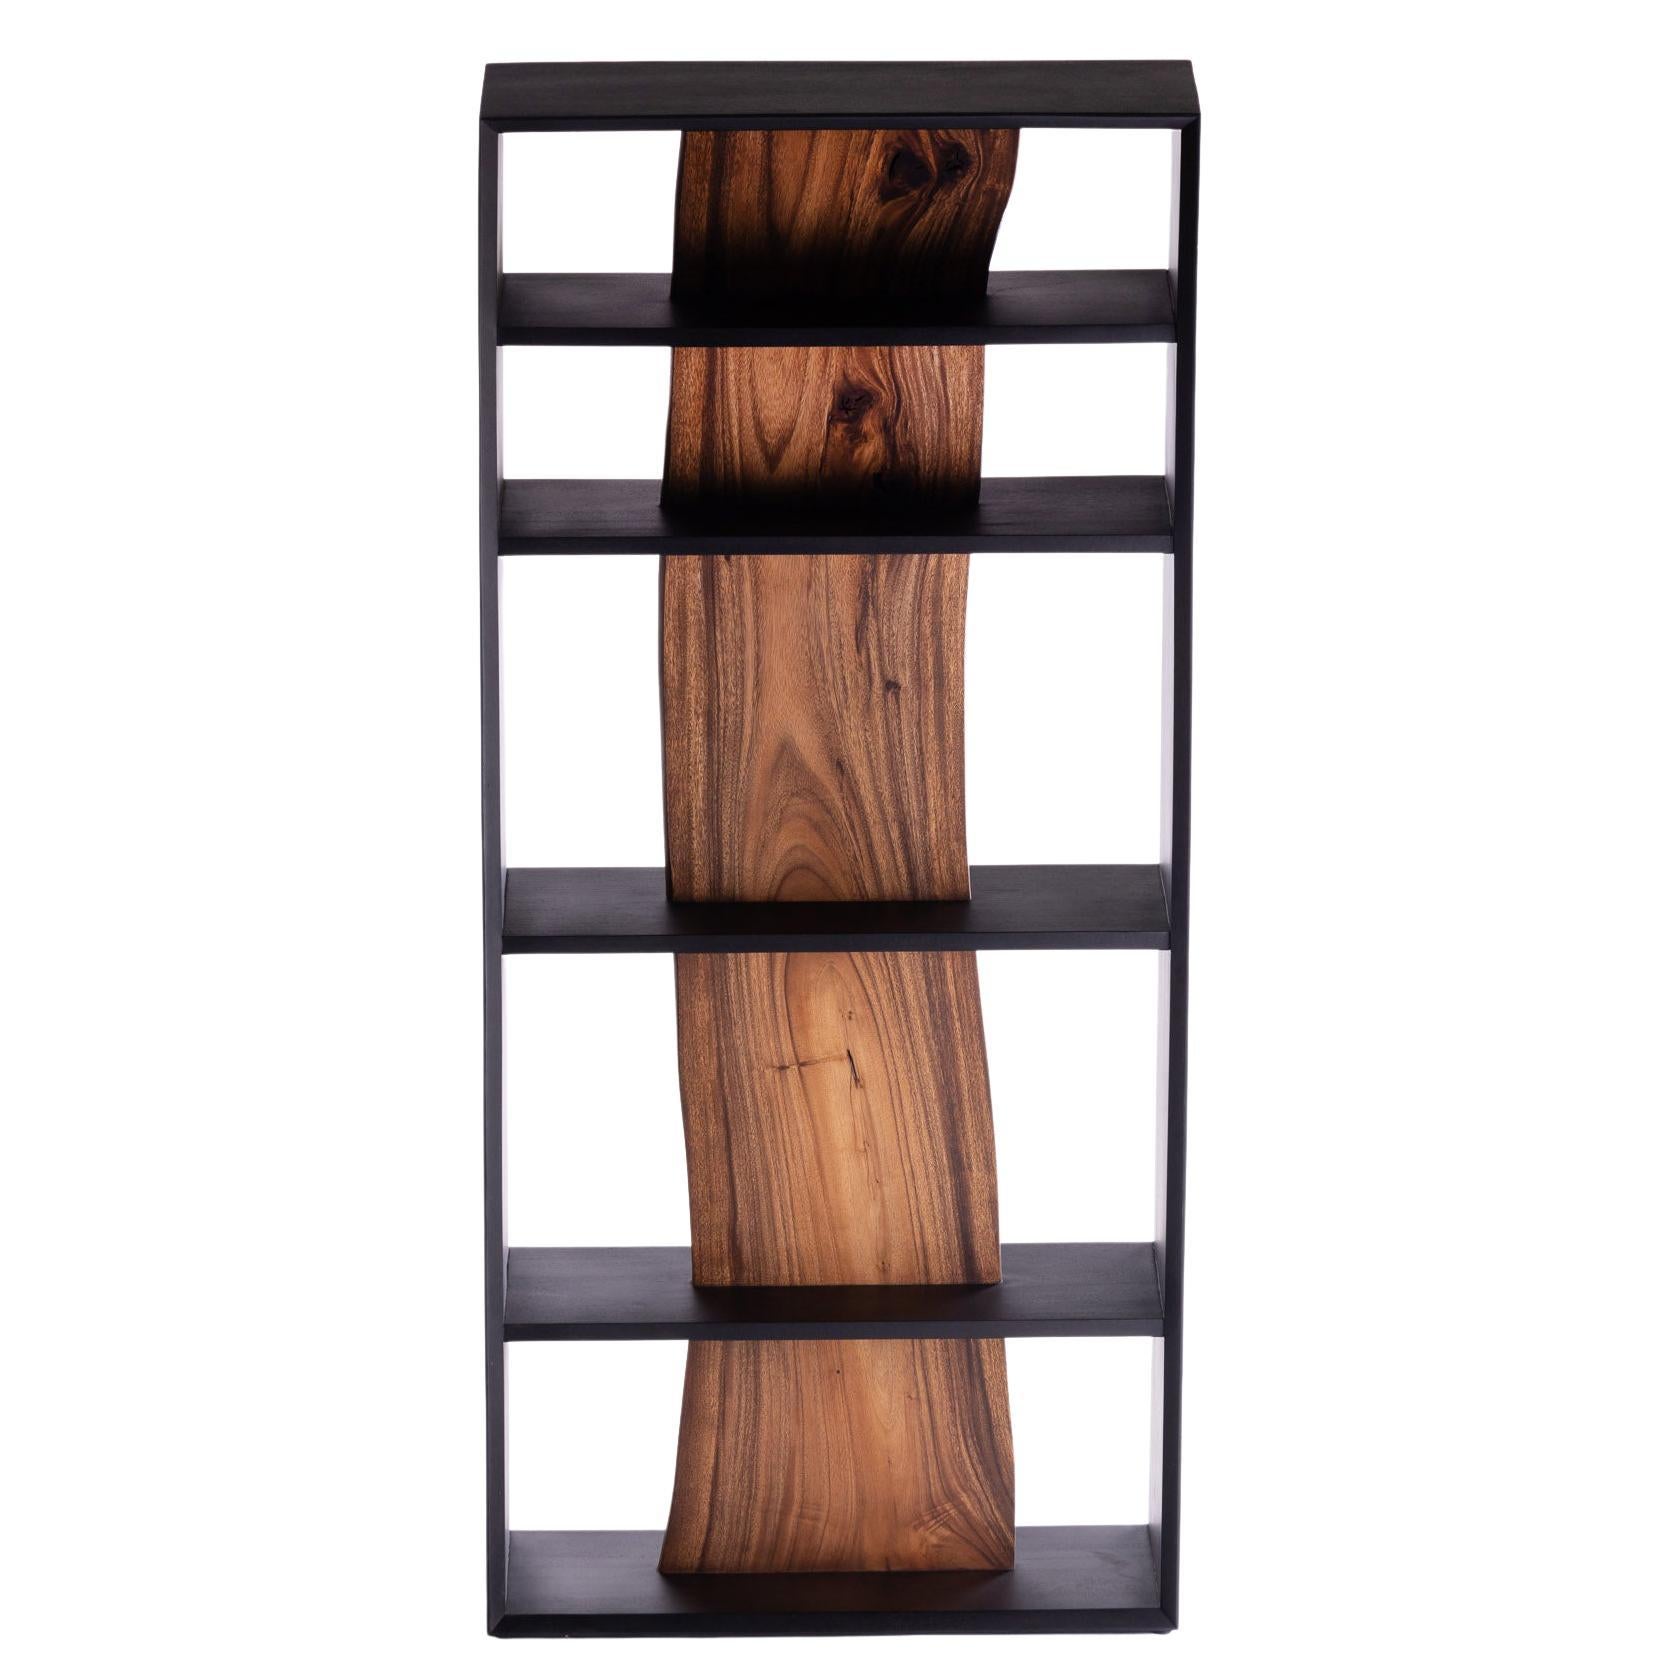 Darakorn Vertical Shelf, Two Tone Wood (Charcoal Black body + Natural Slab)